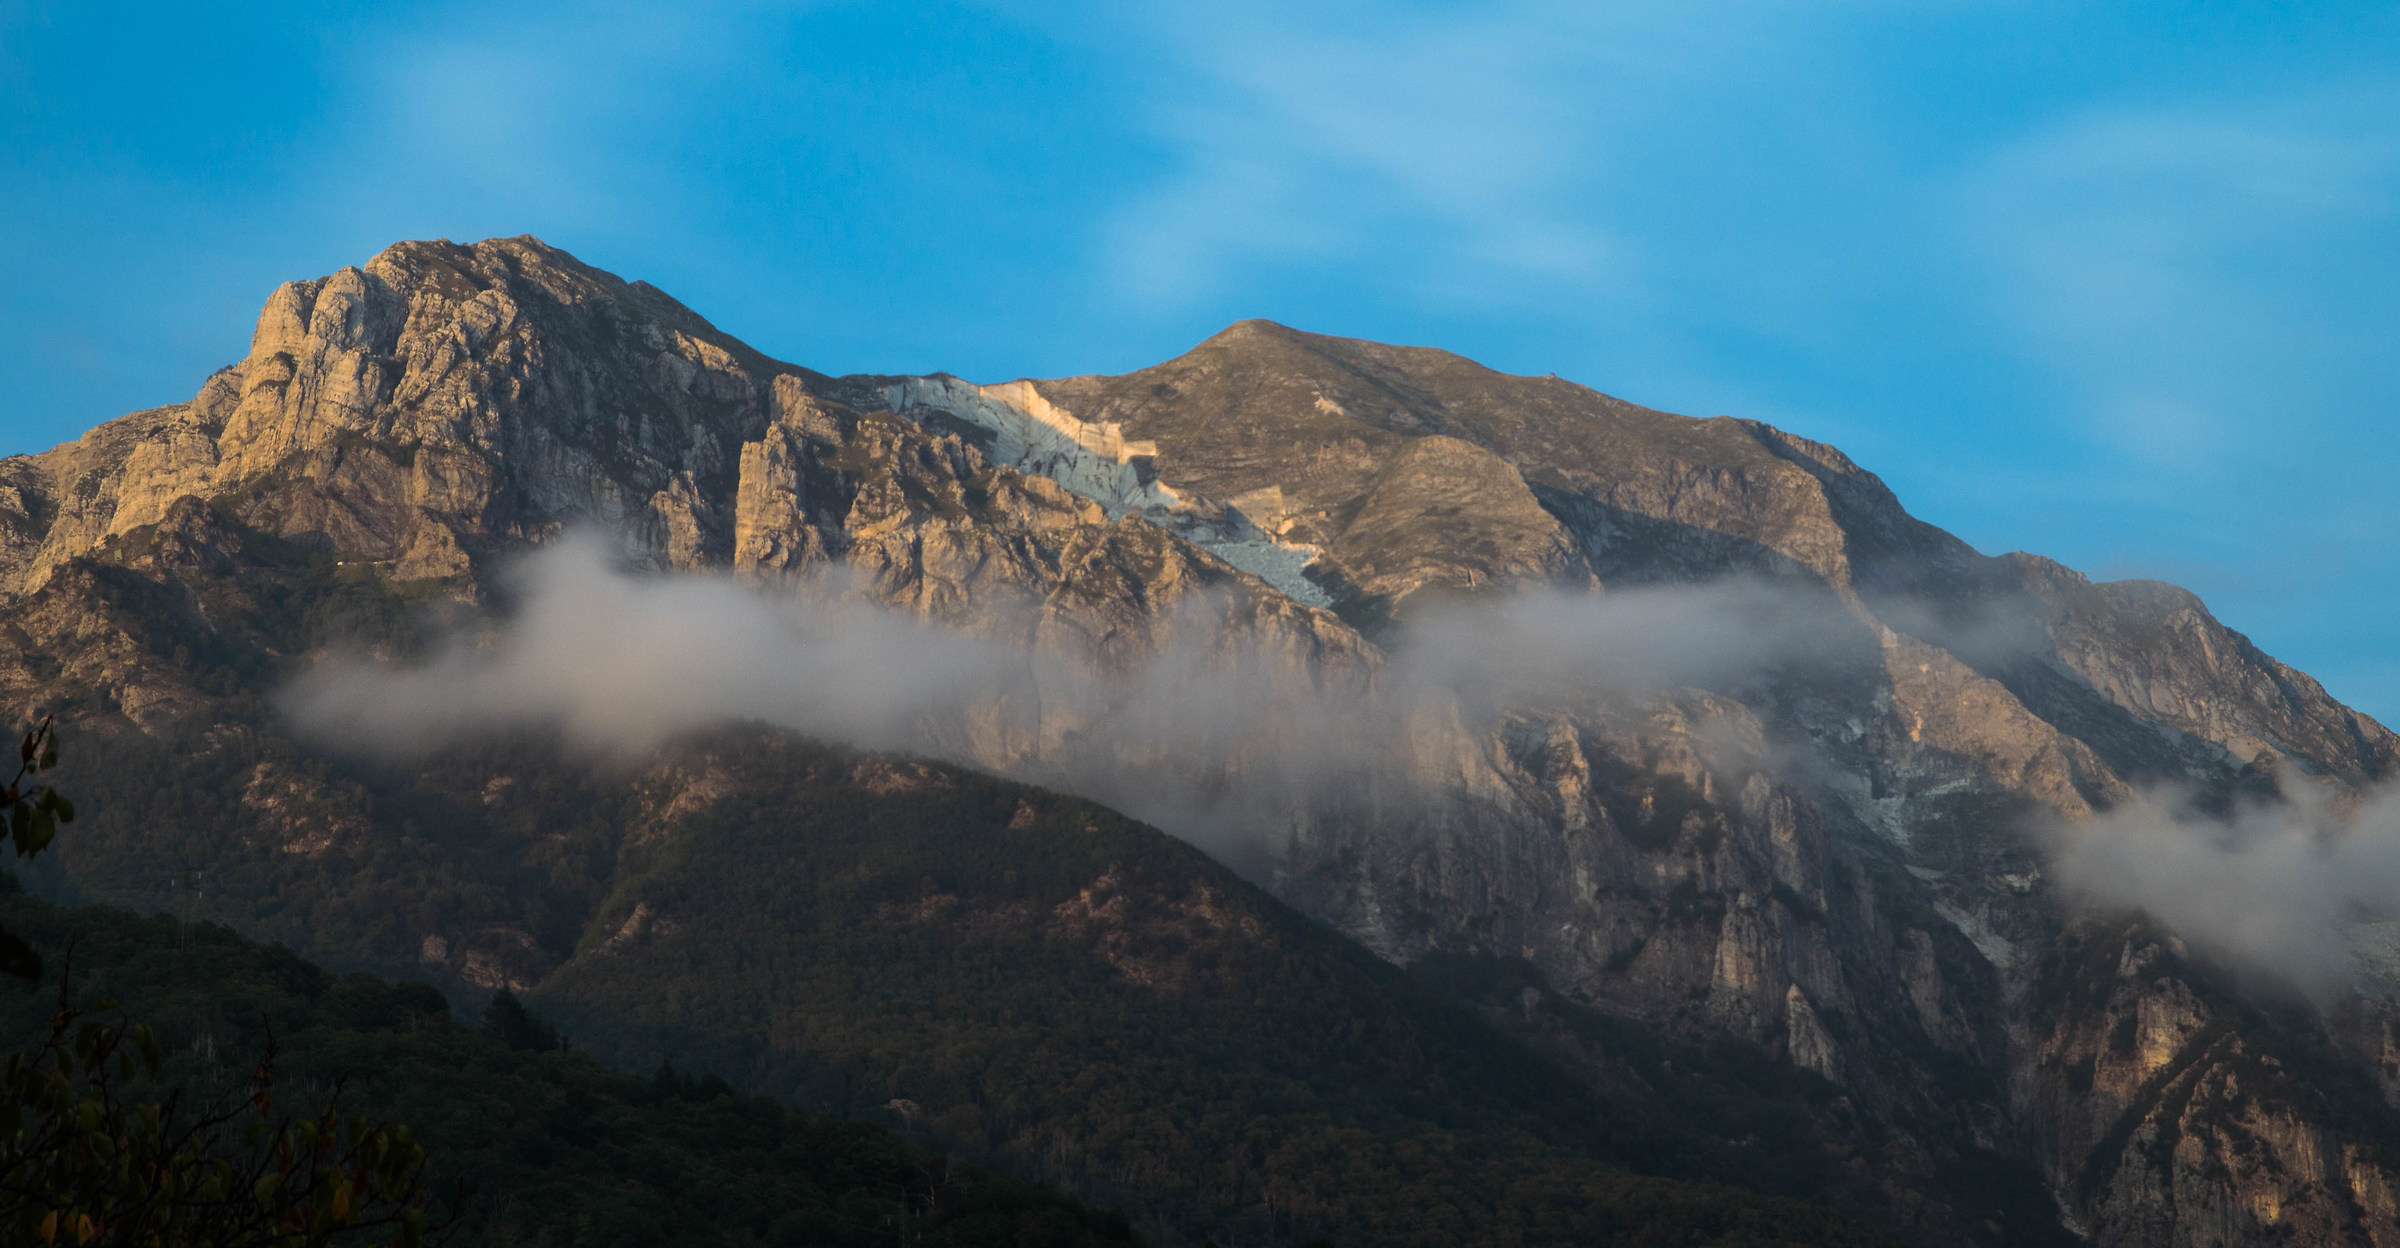 Prova filtro Nd 1000 Neewer (Monte Corchia Alpi Apuane)...